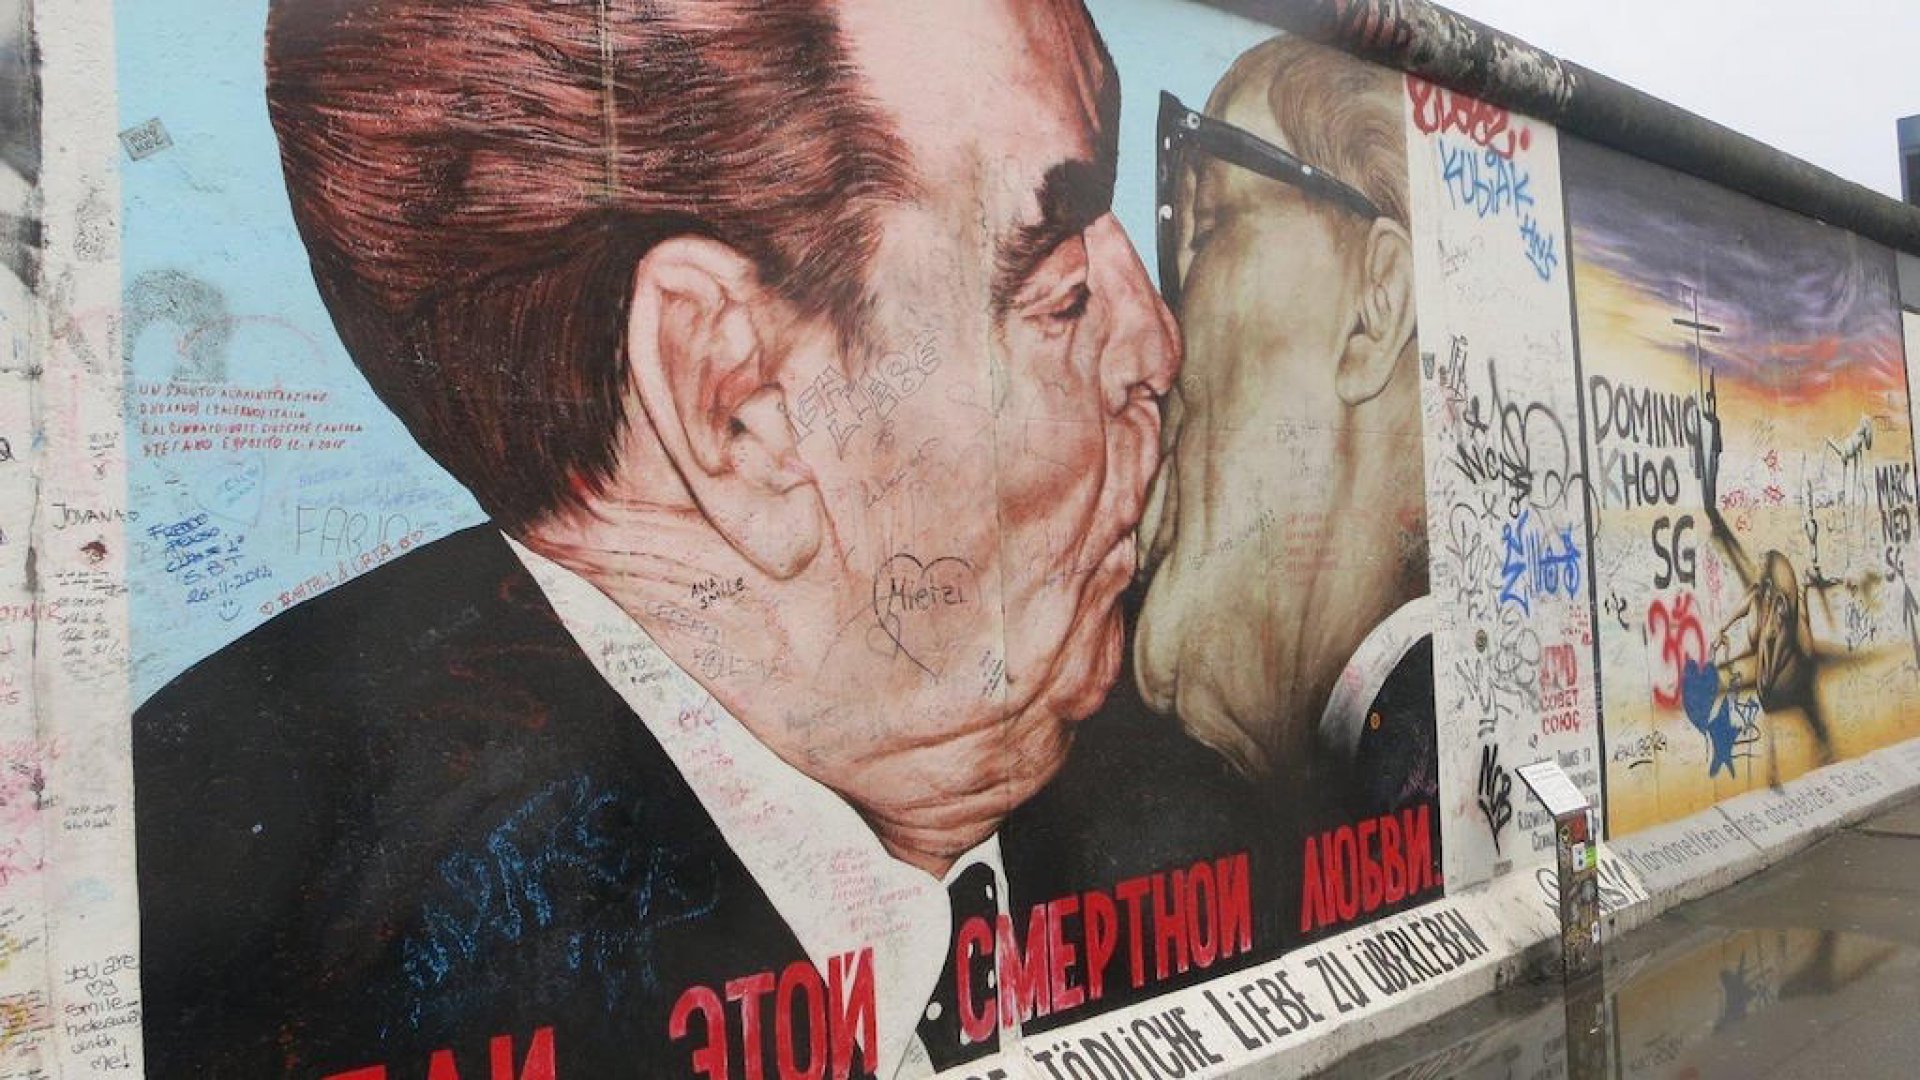 Берлинская стена: история создания и разрушения в контексте европейской истории